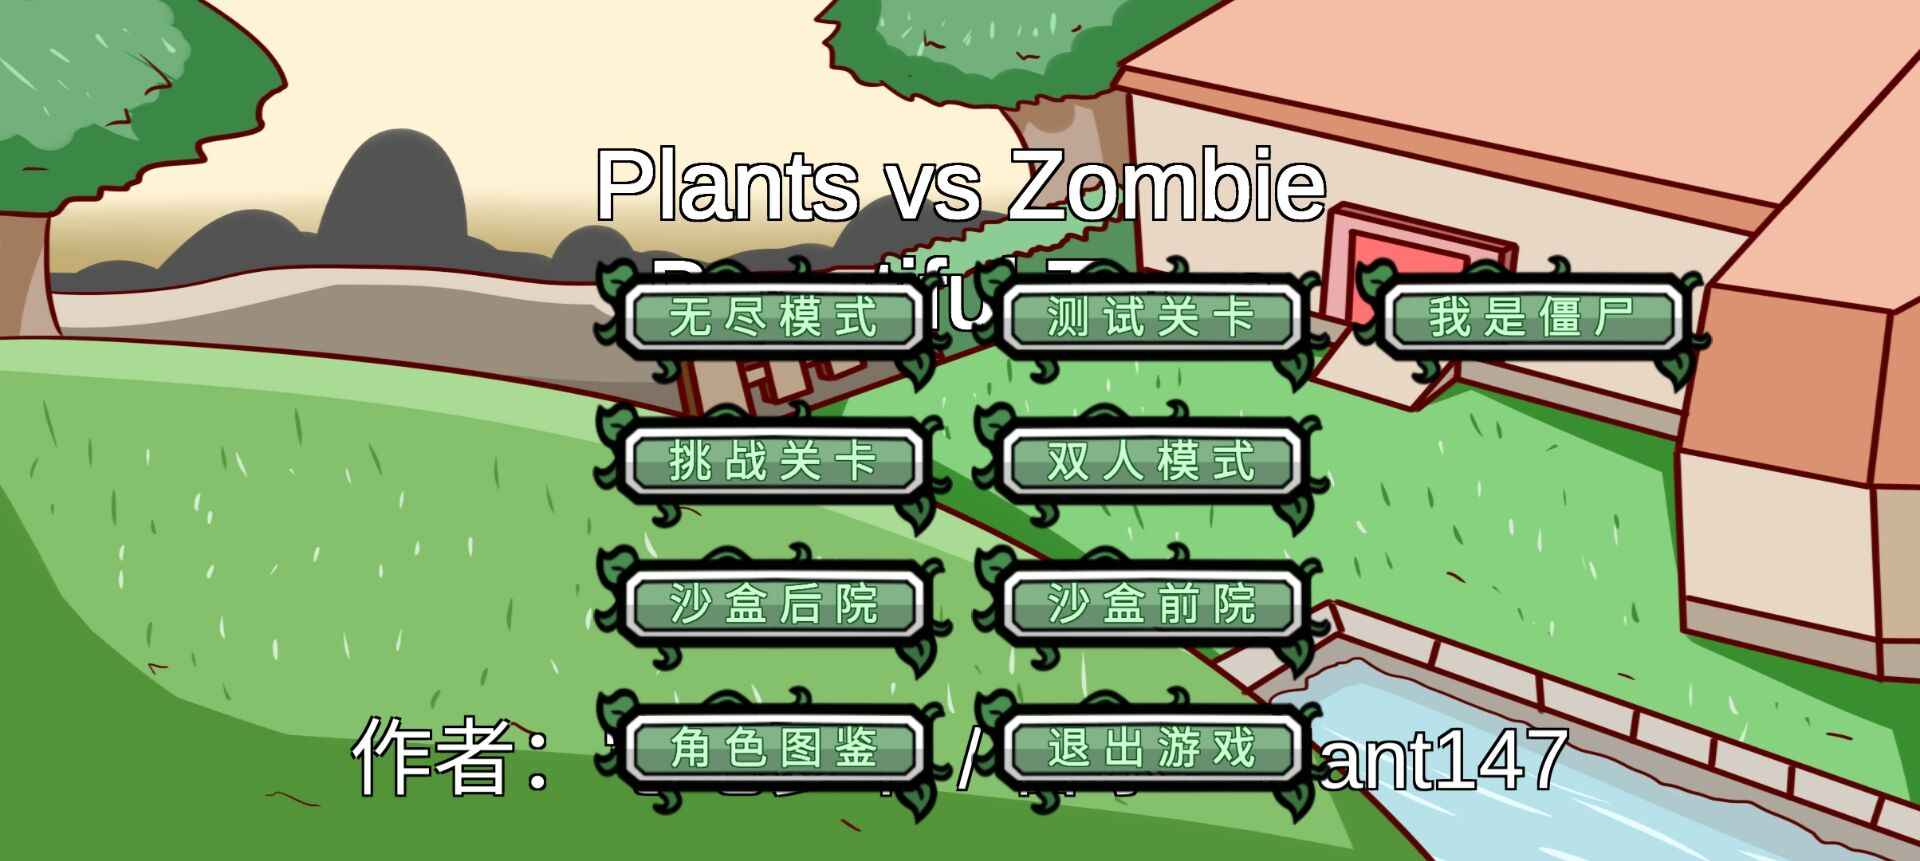 植物大战僵尸高难版好玩吗 植物大战僵尸高难版玩法简介